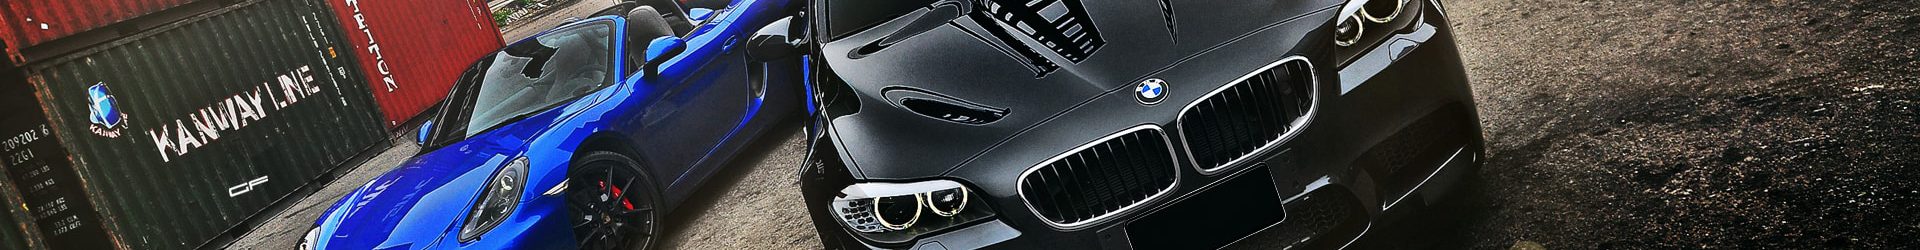 –反而耀眼– BMW E92 M3 消光灰 開箱拍攝